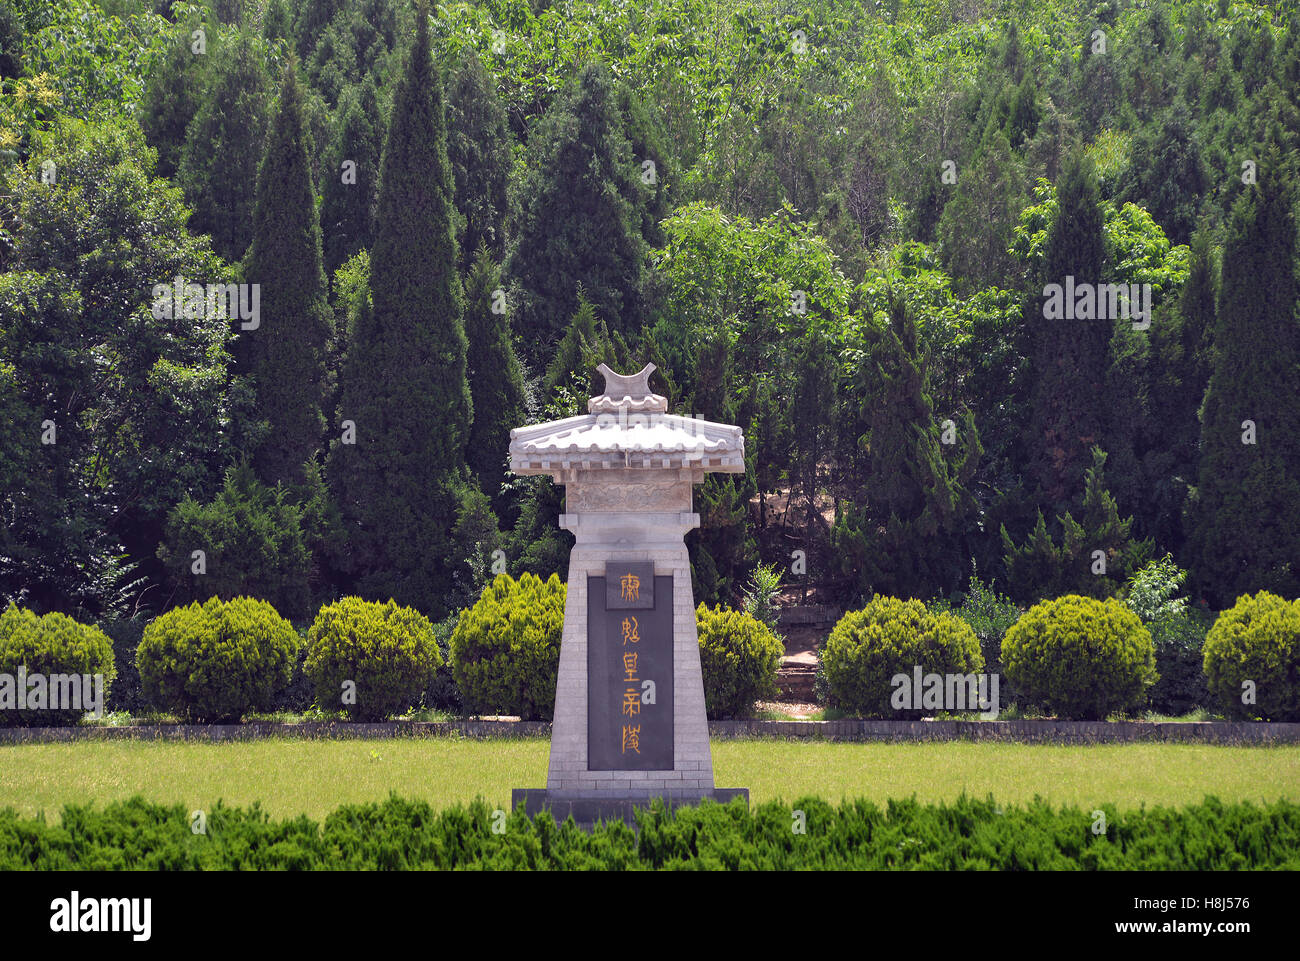 memorial of Qin Shi Huangdi emperor Xi'an China Stock Photo